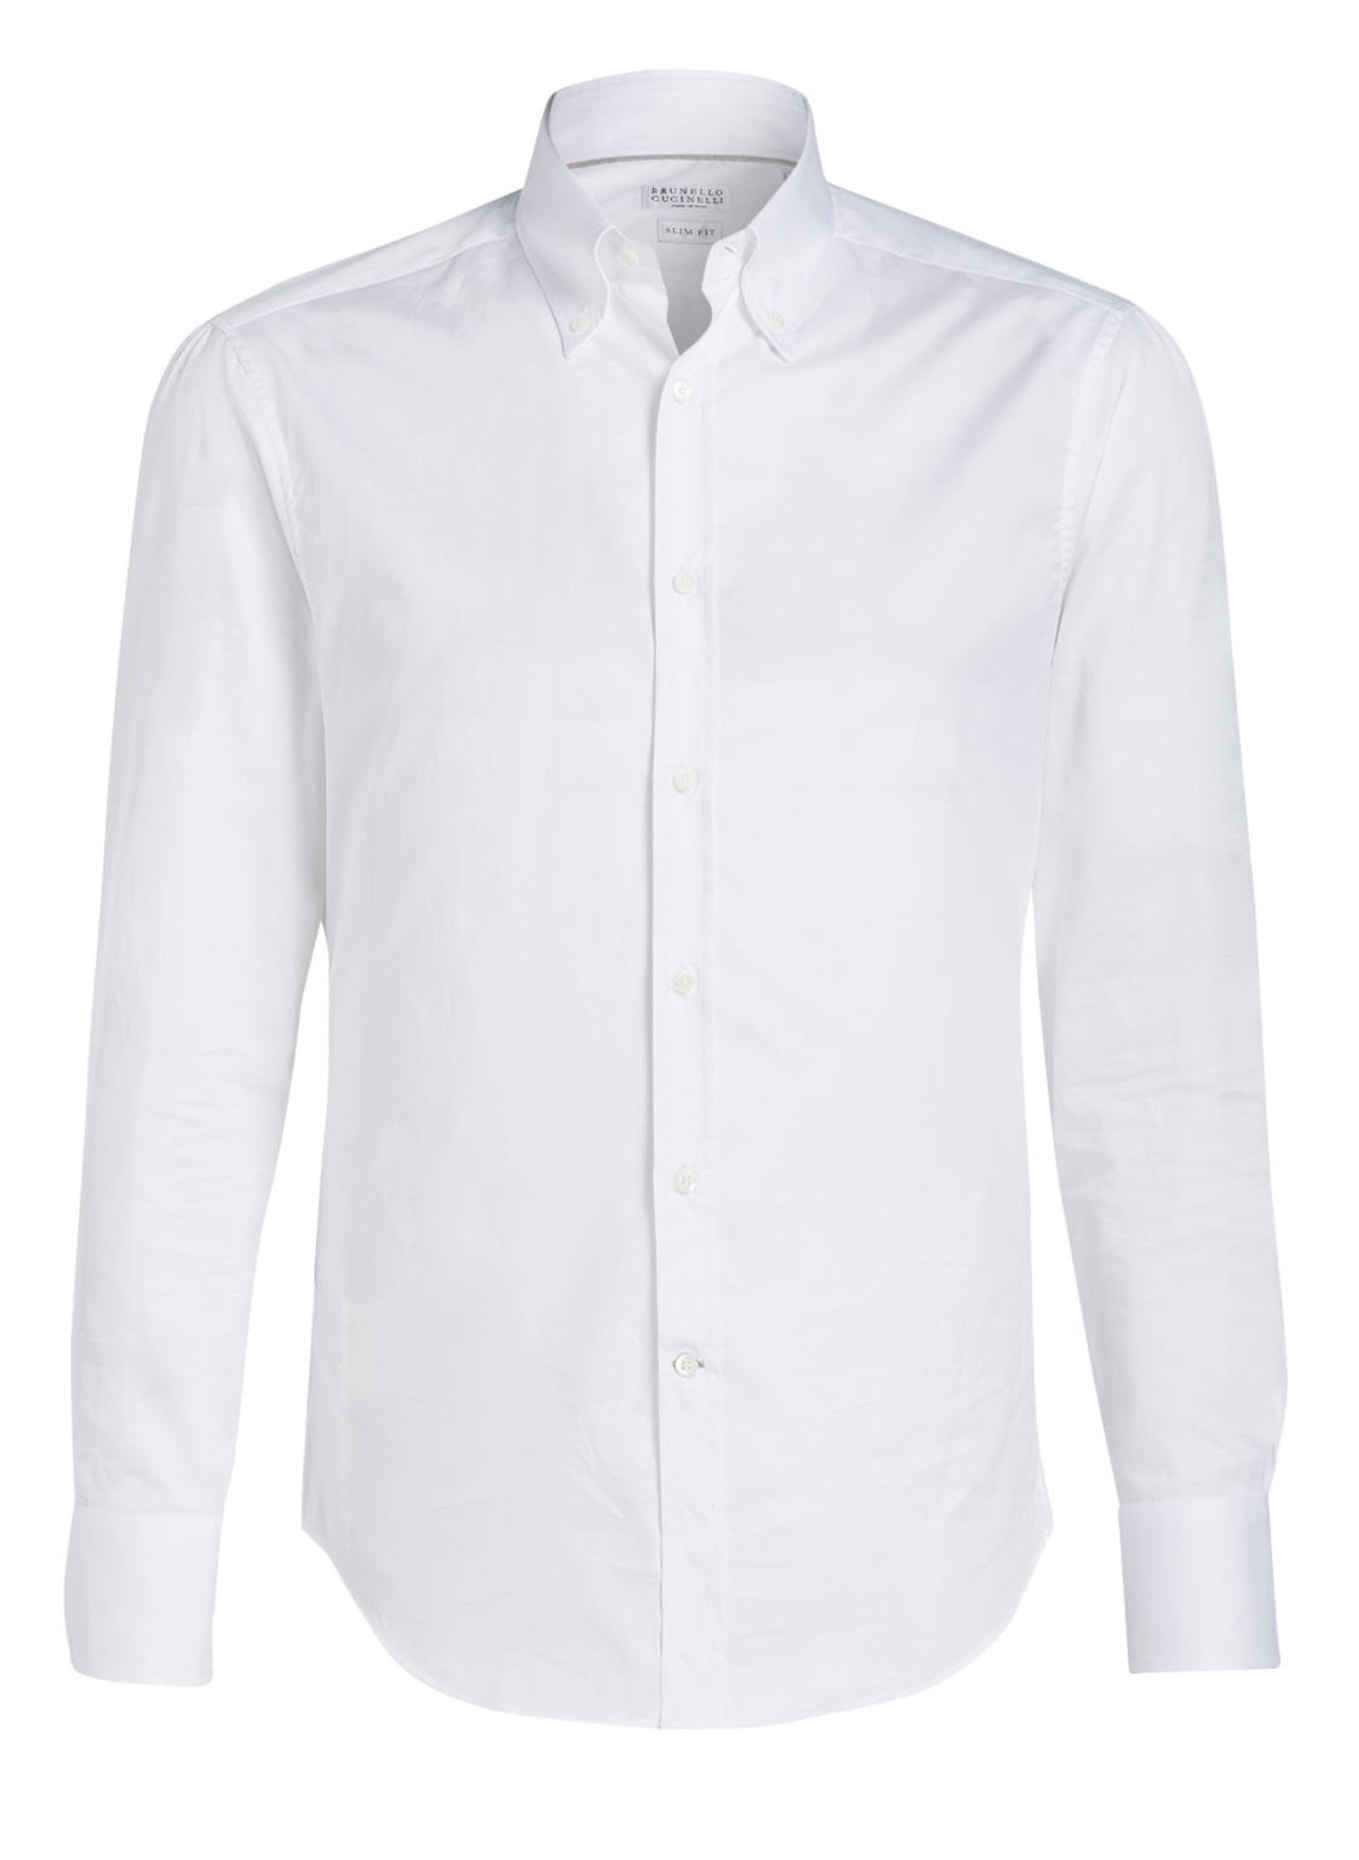 BRUNELLO CUCINELLI Hemd Slim Fit, Farbe: WEISS (Bild 1)